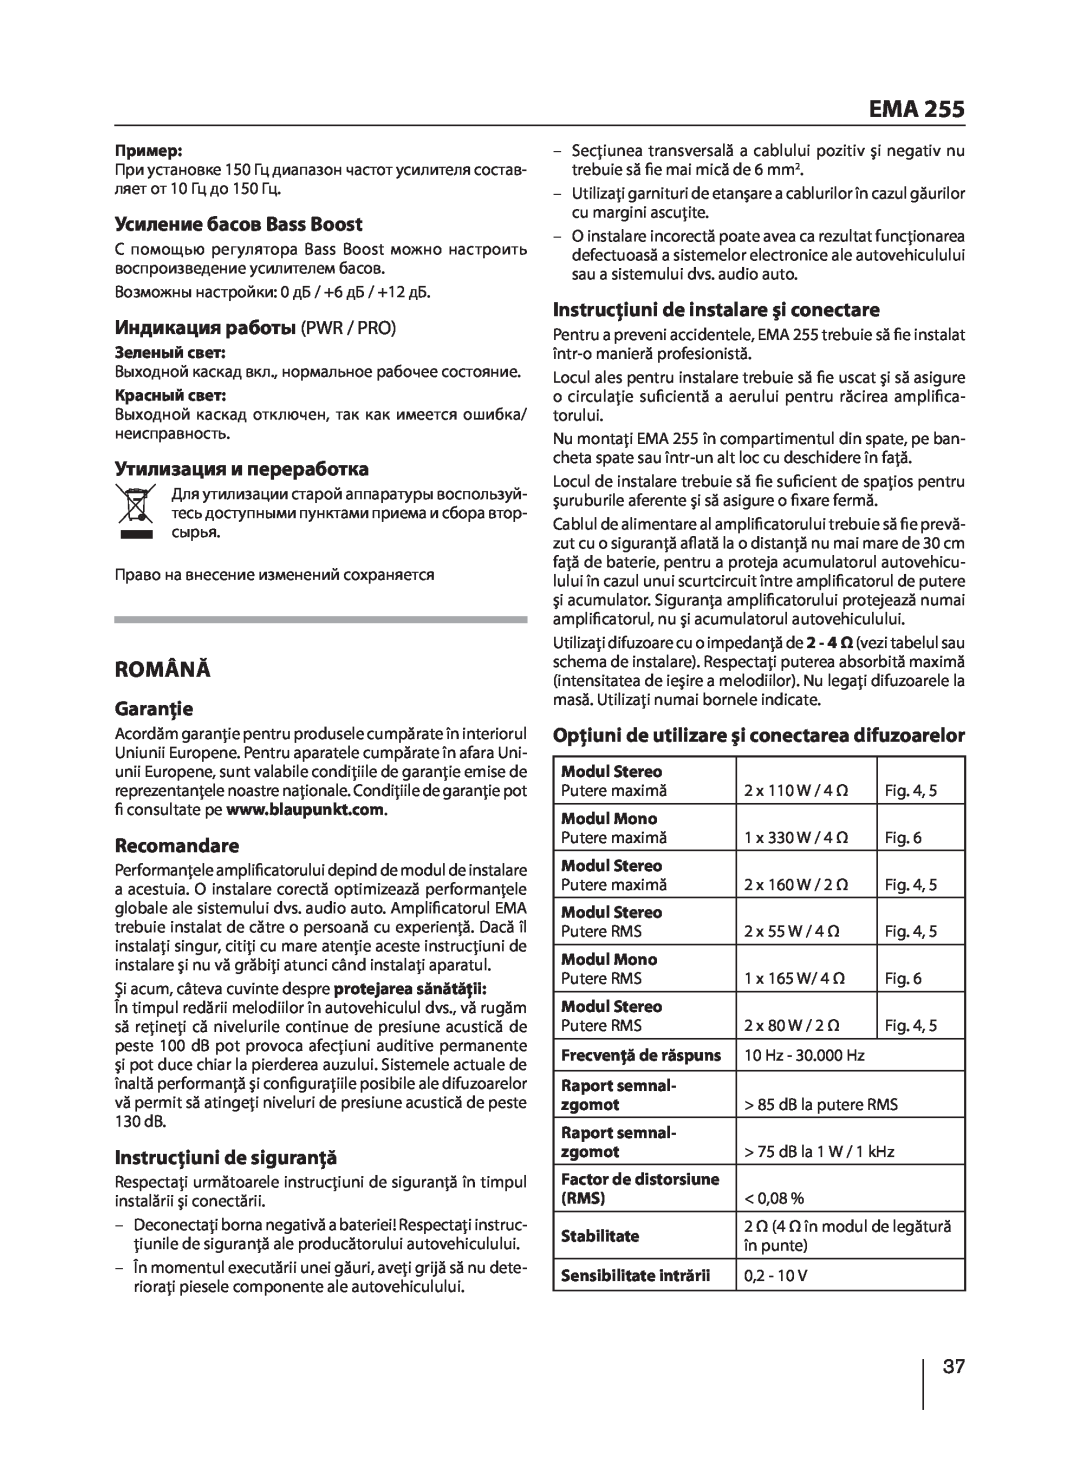 Blaupunkt EMA 255 manual Română, Усиление басов Bass Boost, Индикация работы PWR / PRO, Утилизация и переработка, Garanţie 